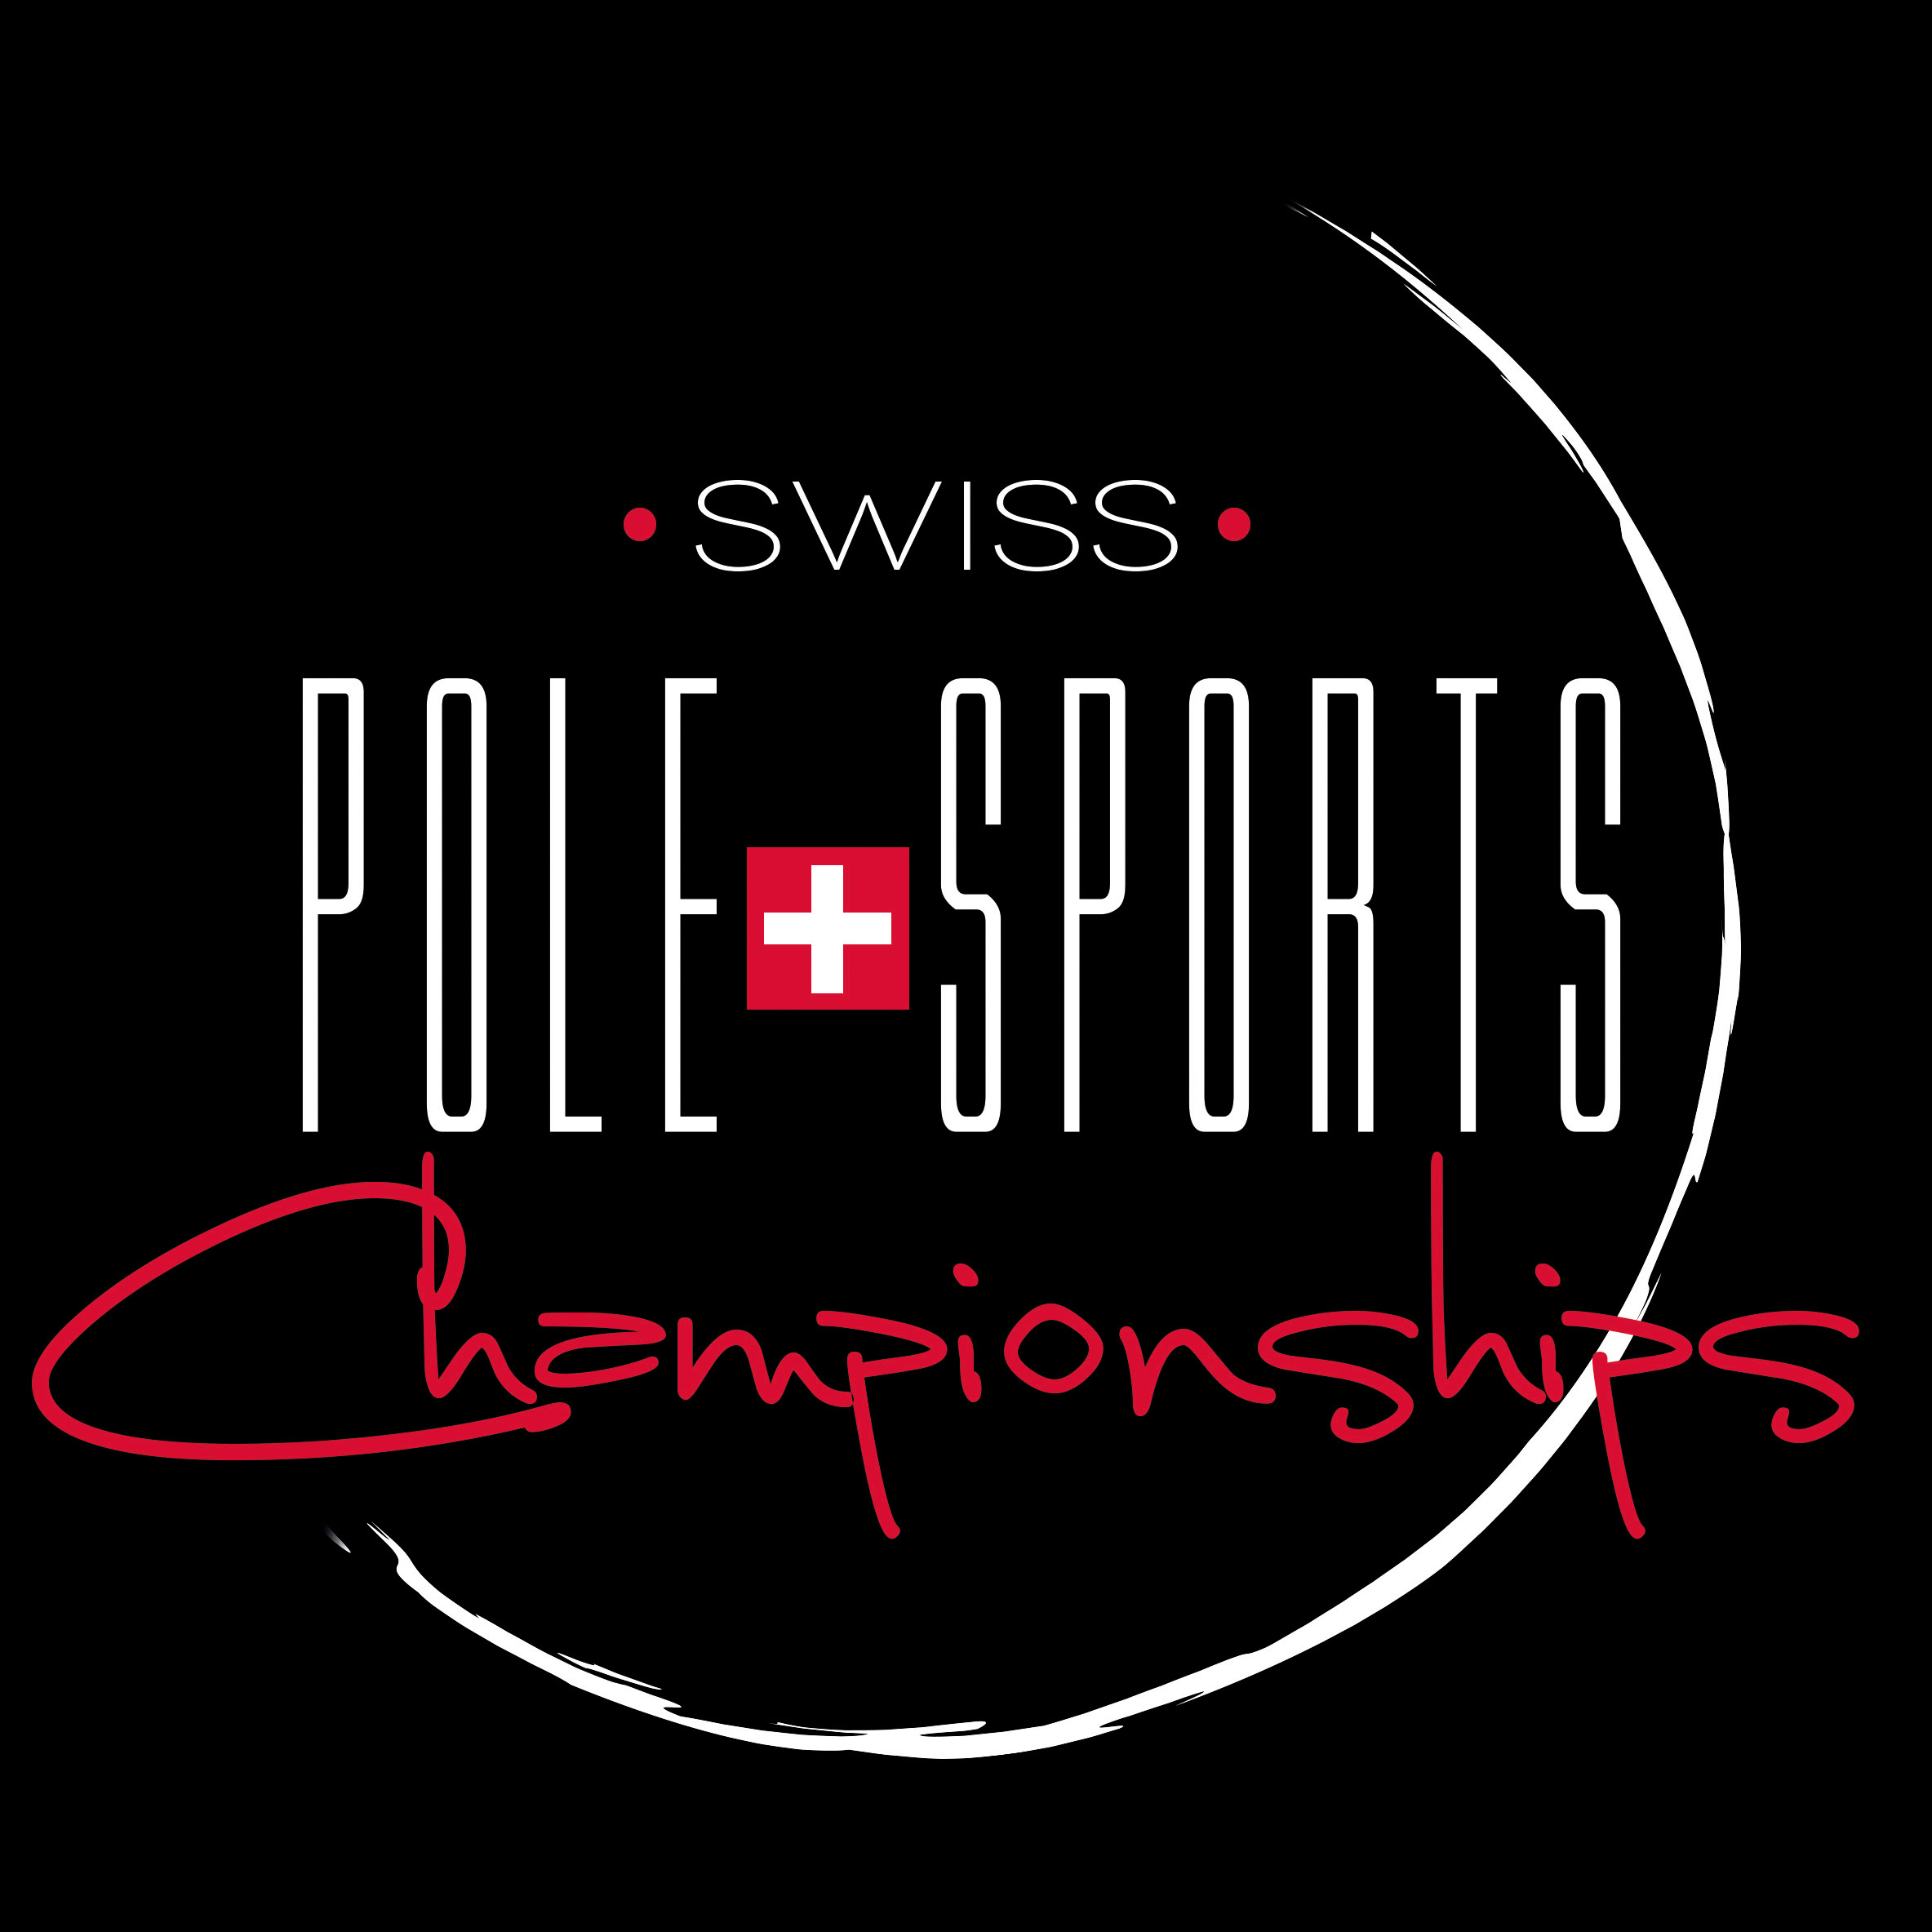 Swiss Pole Sports Championship 2016